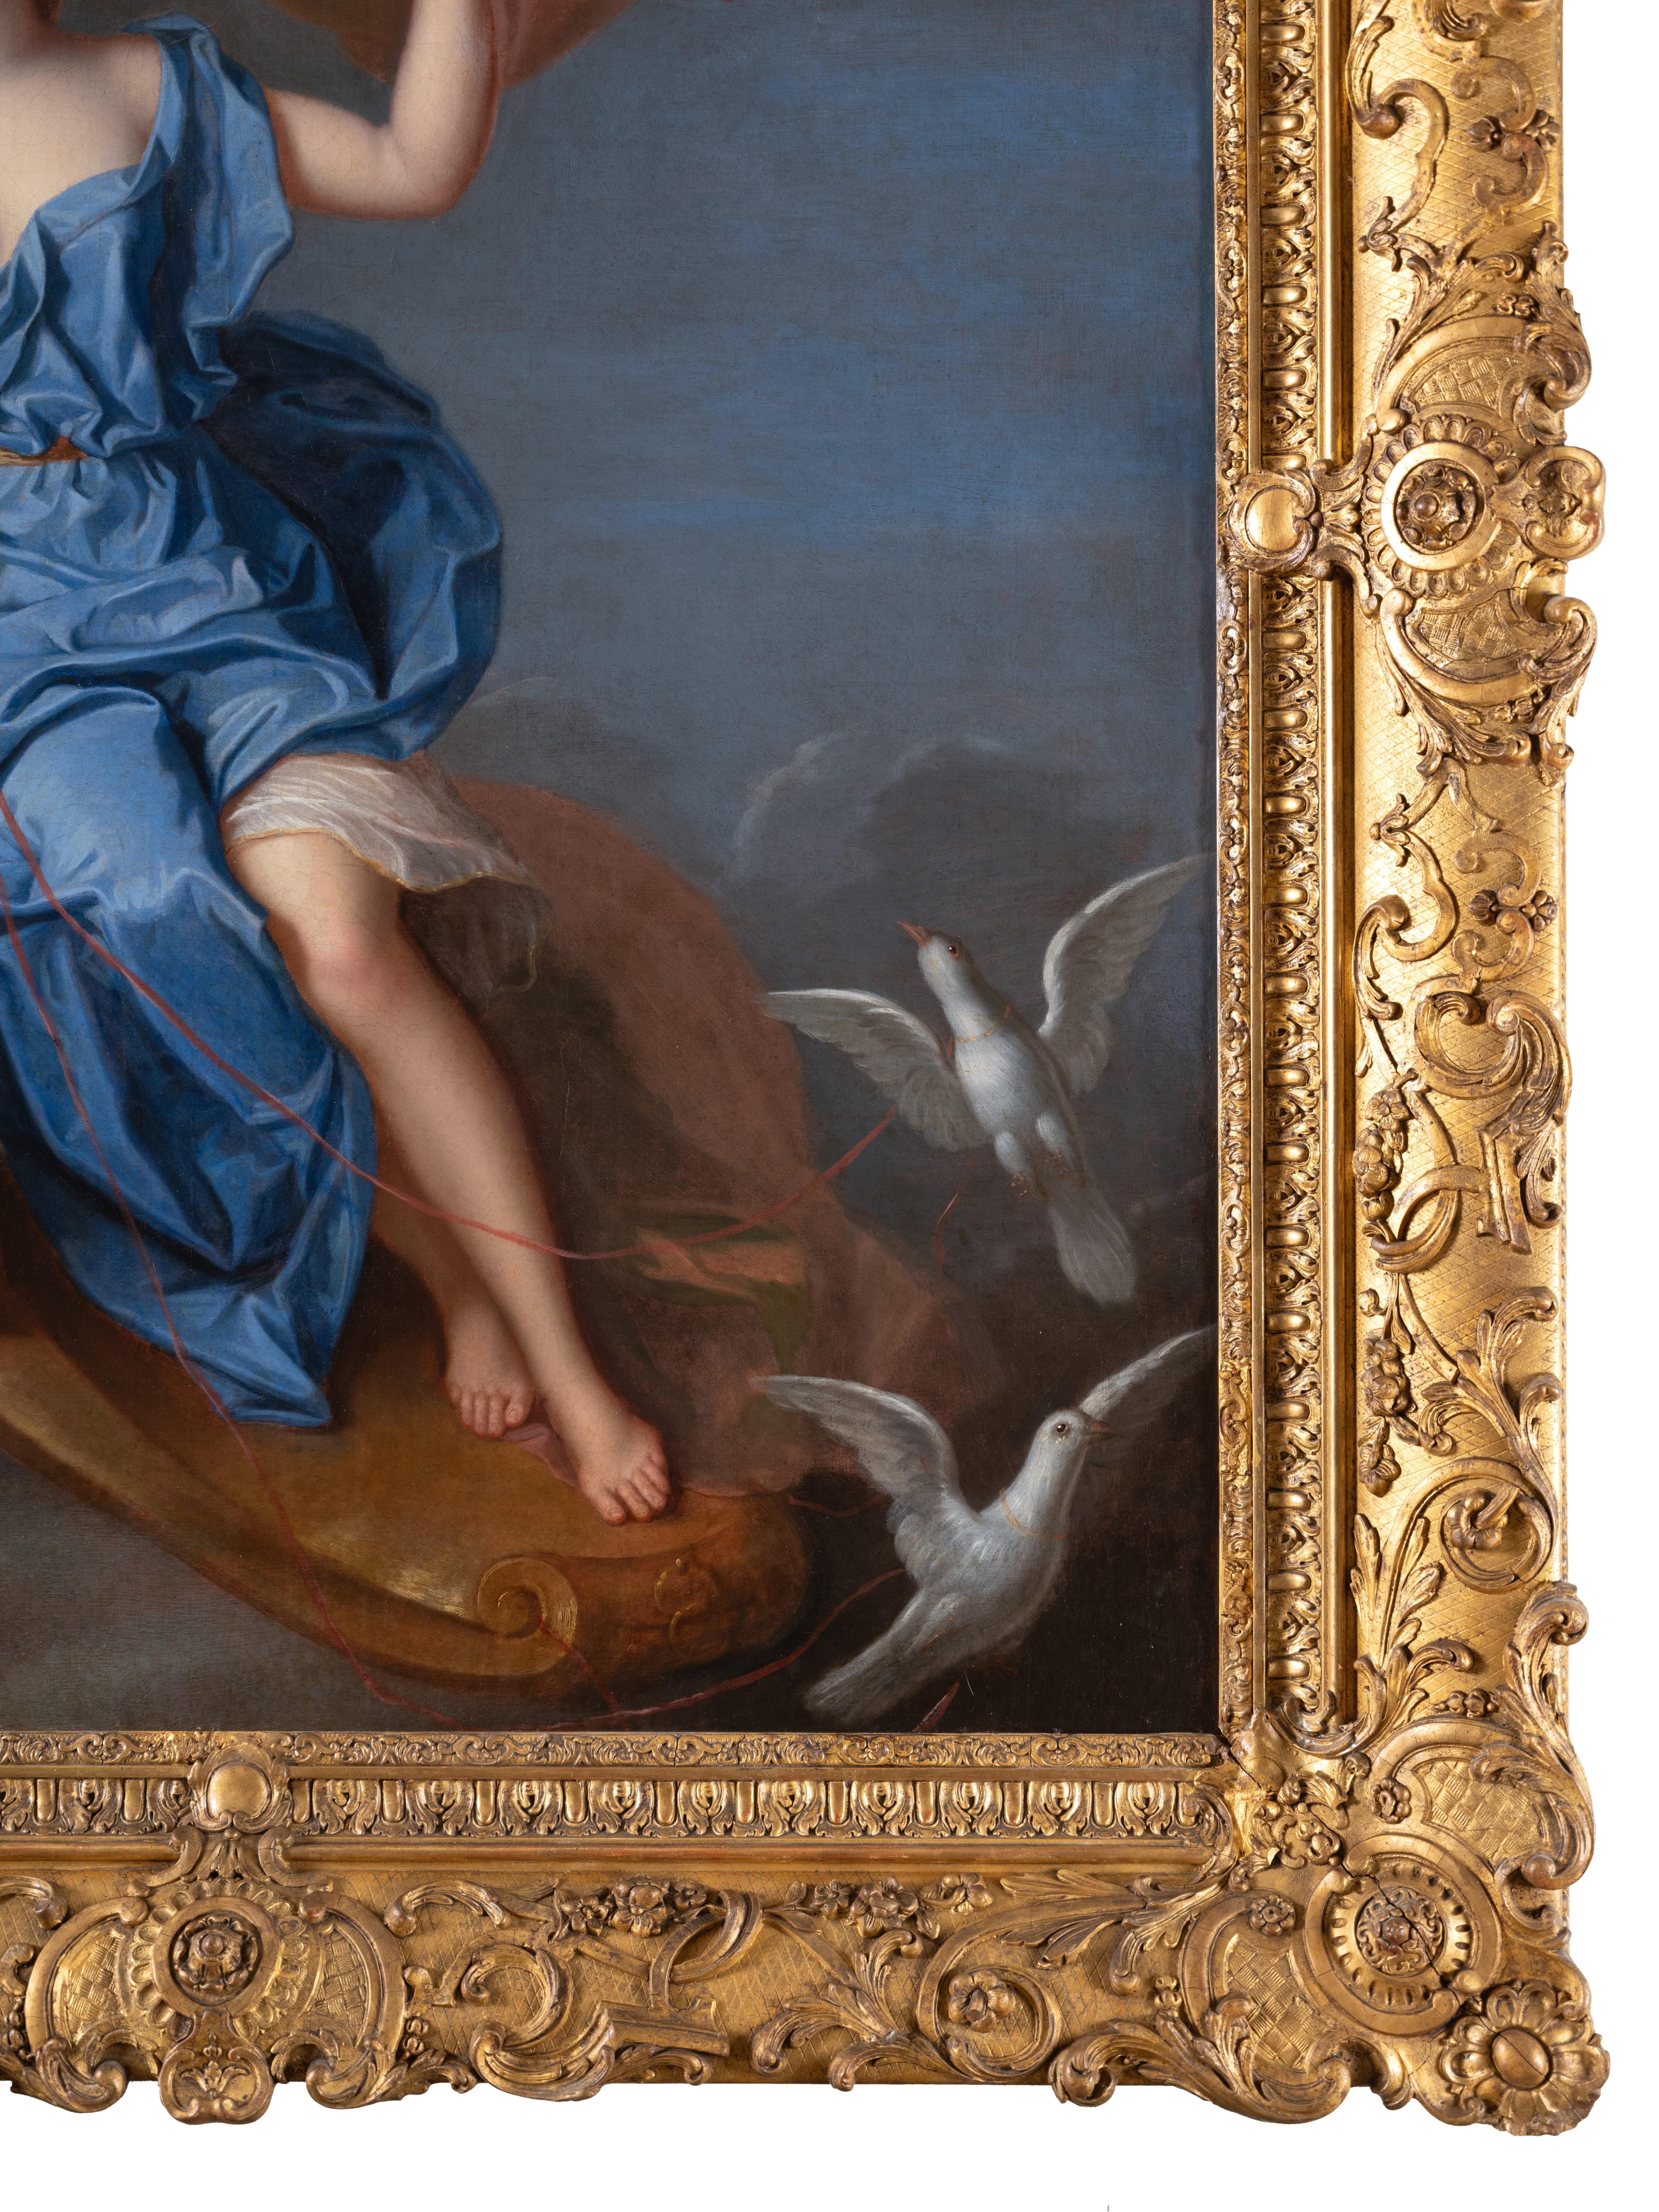 Porträt von Françoise Marie de Bourbon, Herzogin von Orléans als Venus
Das prächtige Gemälde zeigt die Prinzessin in der ganzen Pracht ihrer Jugend, Françoise Marie de Bourbon, bekannt als die zweite Mademoiselle de Blois (Maintenon, 1677 - Paris,